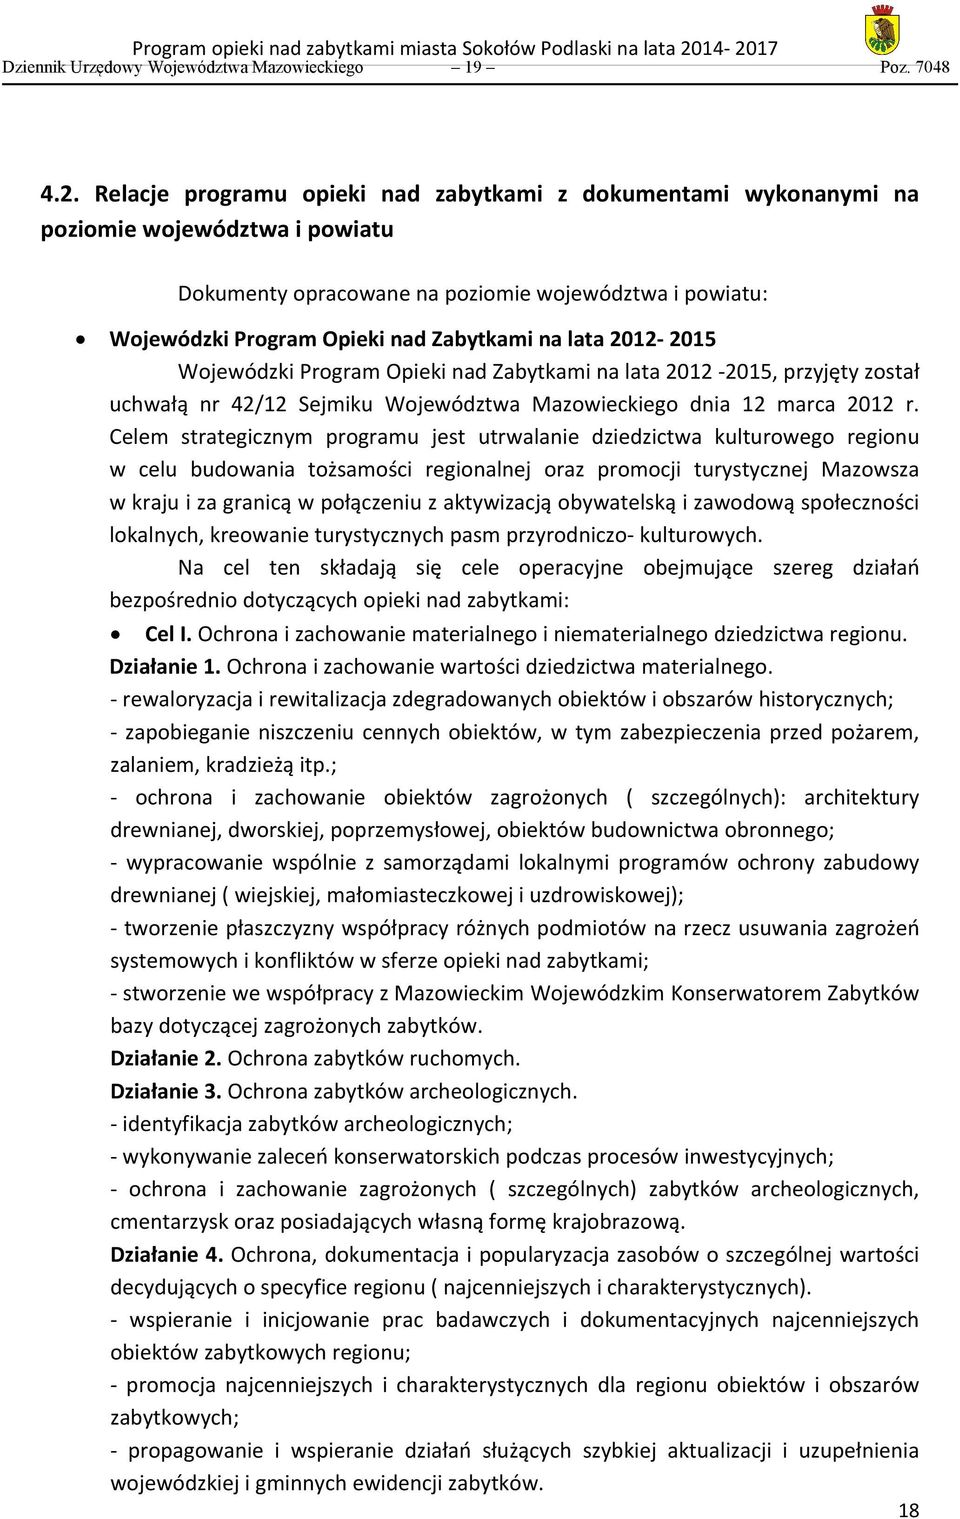 lata 2012-2015 Wojewódzki Program Opieki nad Zabytkami na lata 2012-2015, przyjęty został uchwałą nr 42/12 Sejmiku Województwa Mazowieckiego dnia 12 marca 2012 r.